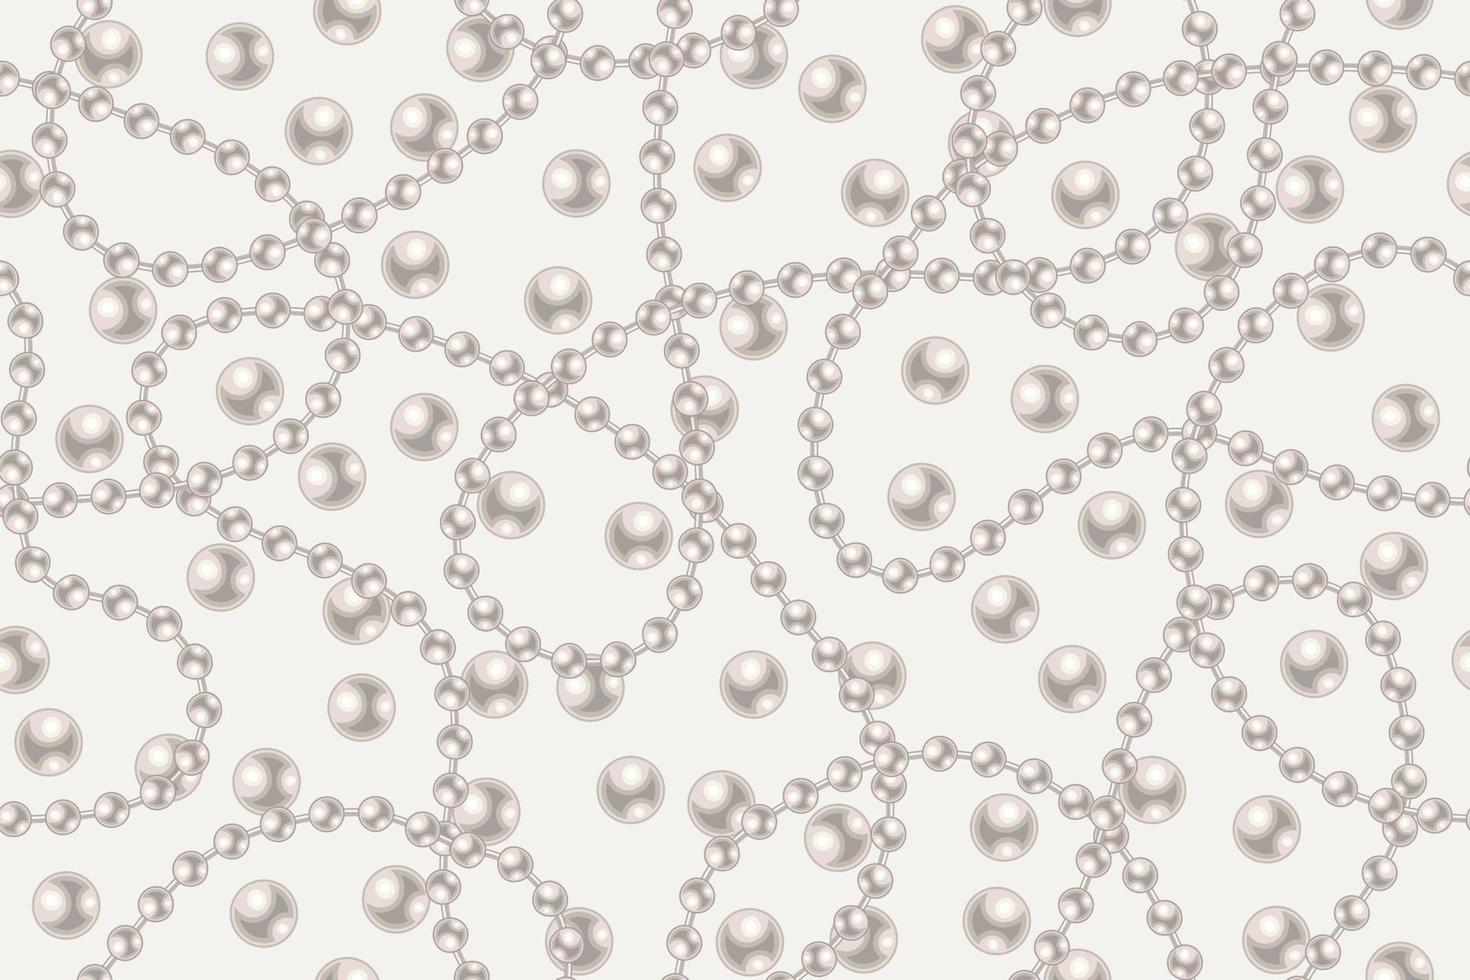 senza cuciture con grandi perle bianche di perle, fili di perle su sfondo chiaro. linee ondulate, classico colore pastello delle perle. illustrazione vettoriale